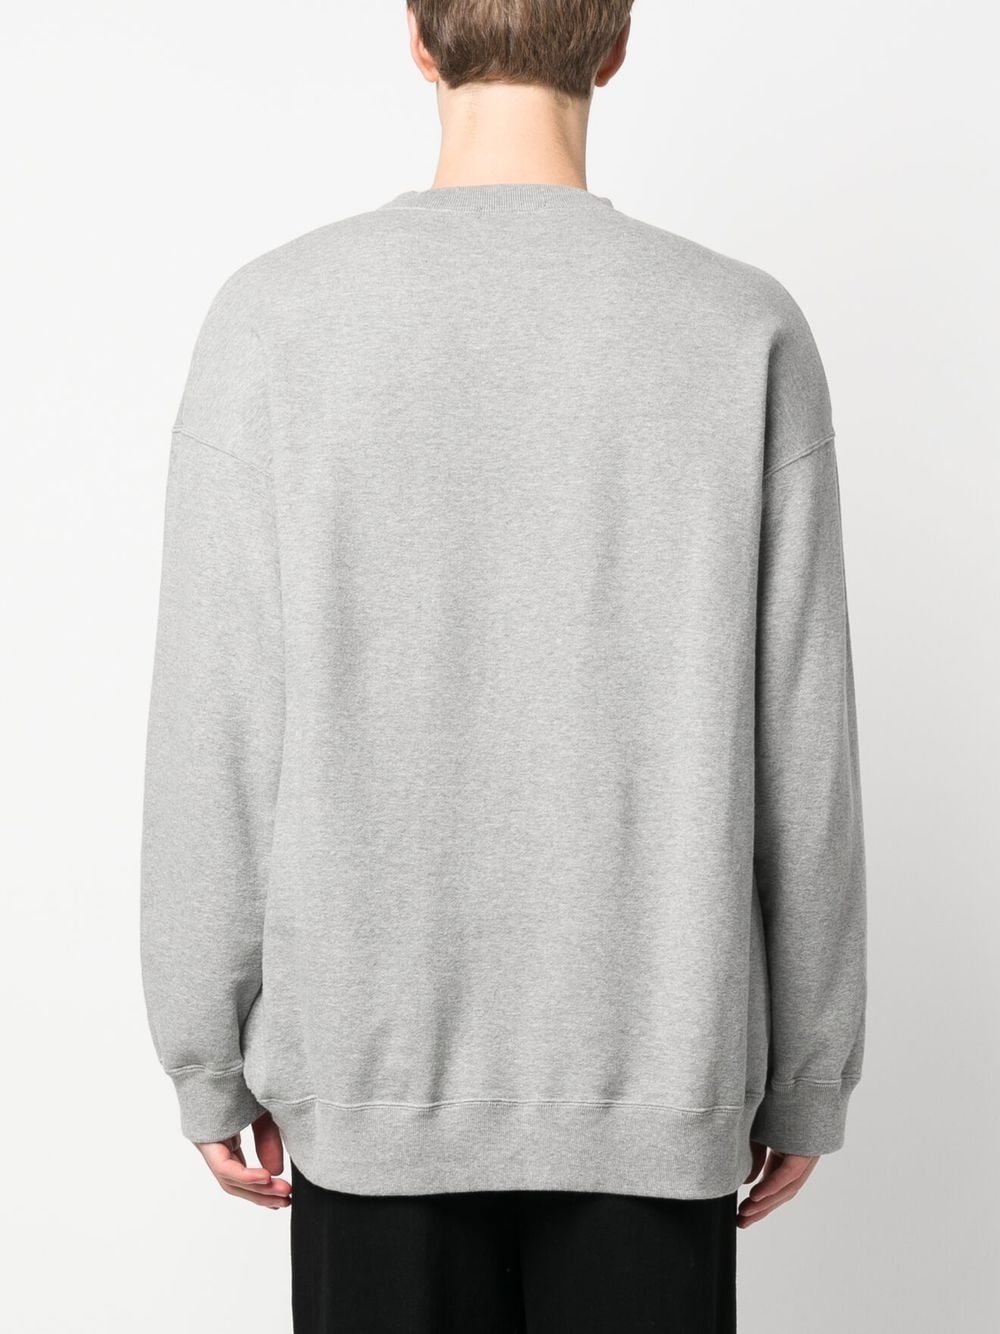 graphic-print crew neck sweatshirt - 4